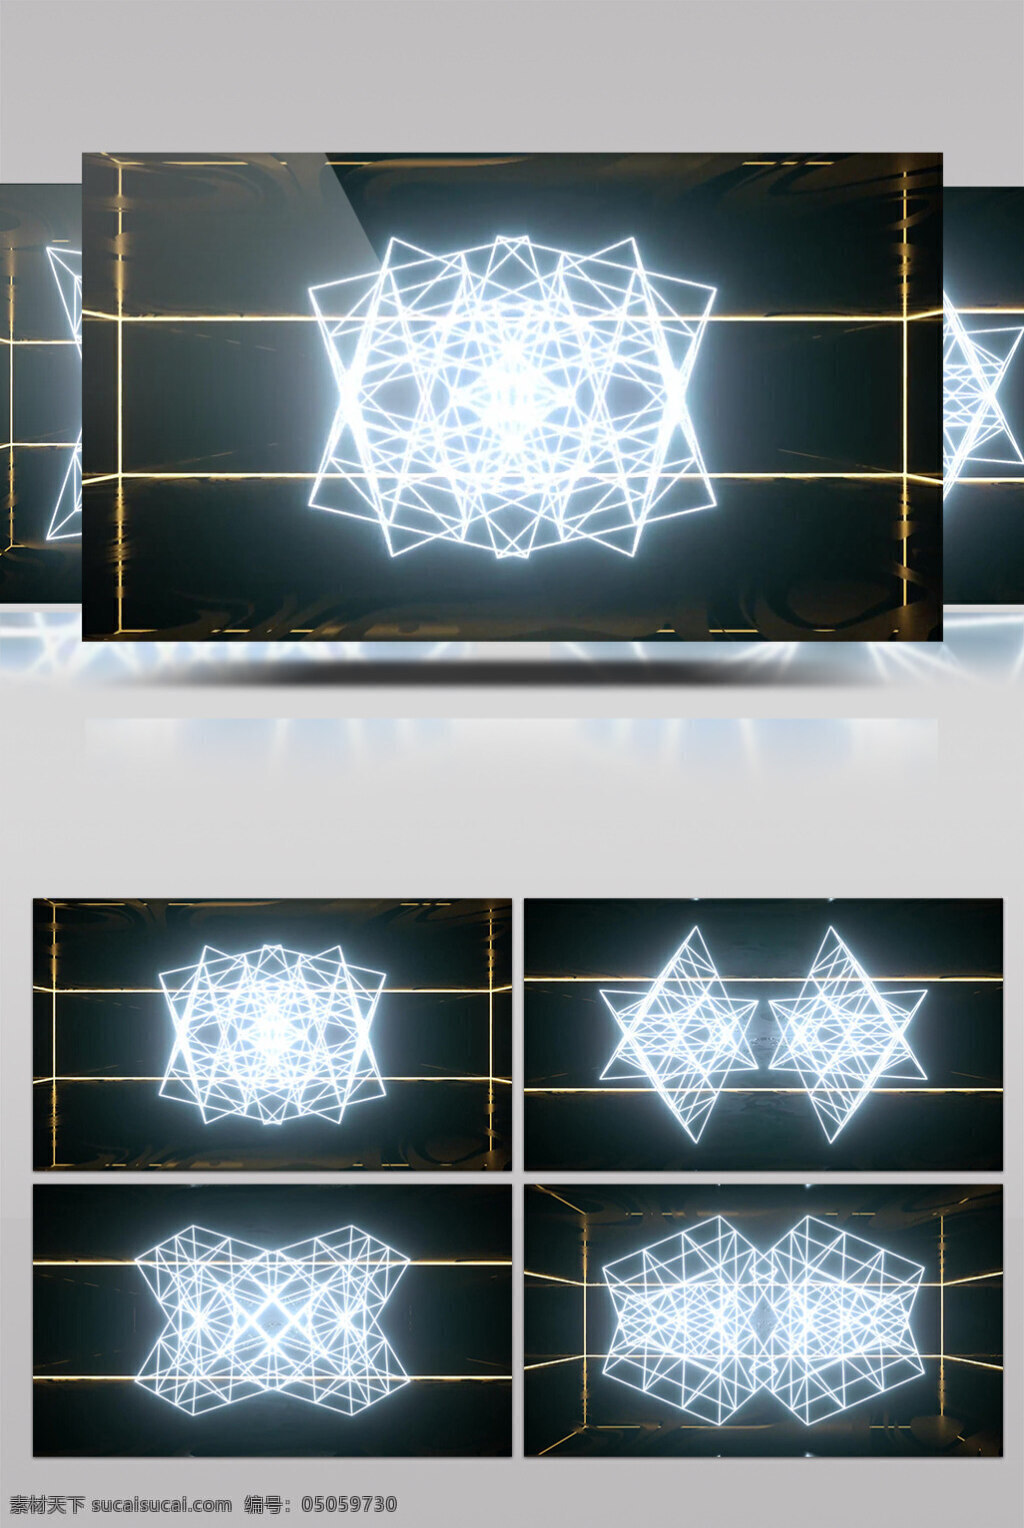 白光 几何 变换 动态 视频 几何变换 几何魔法 动态星光 华丽流转 光芒四射 3d视频素材 特效视频素材